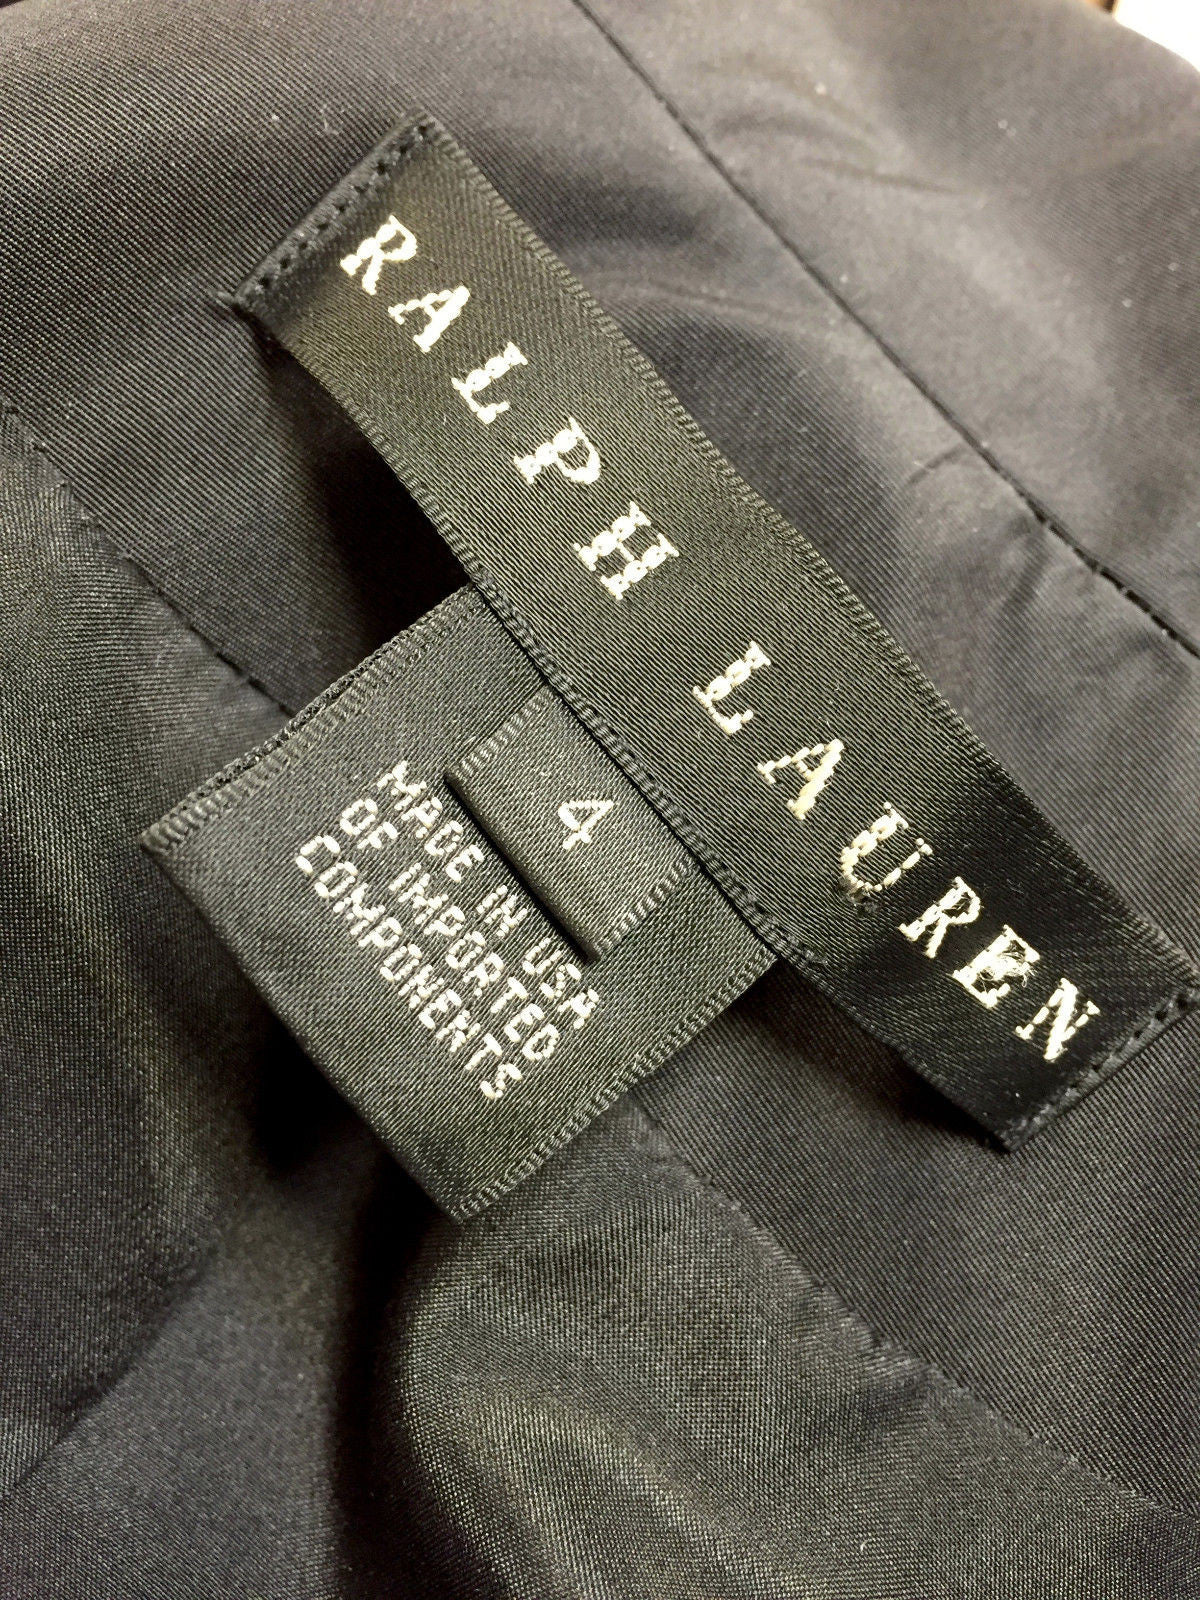 34 Ralph Lauren Black Label Logo - Labels For Your Ideas